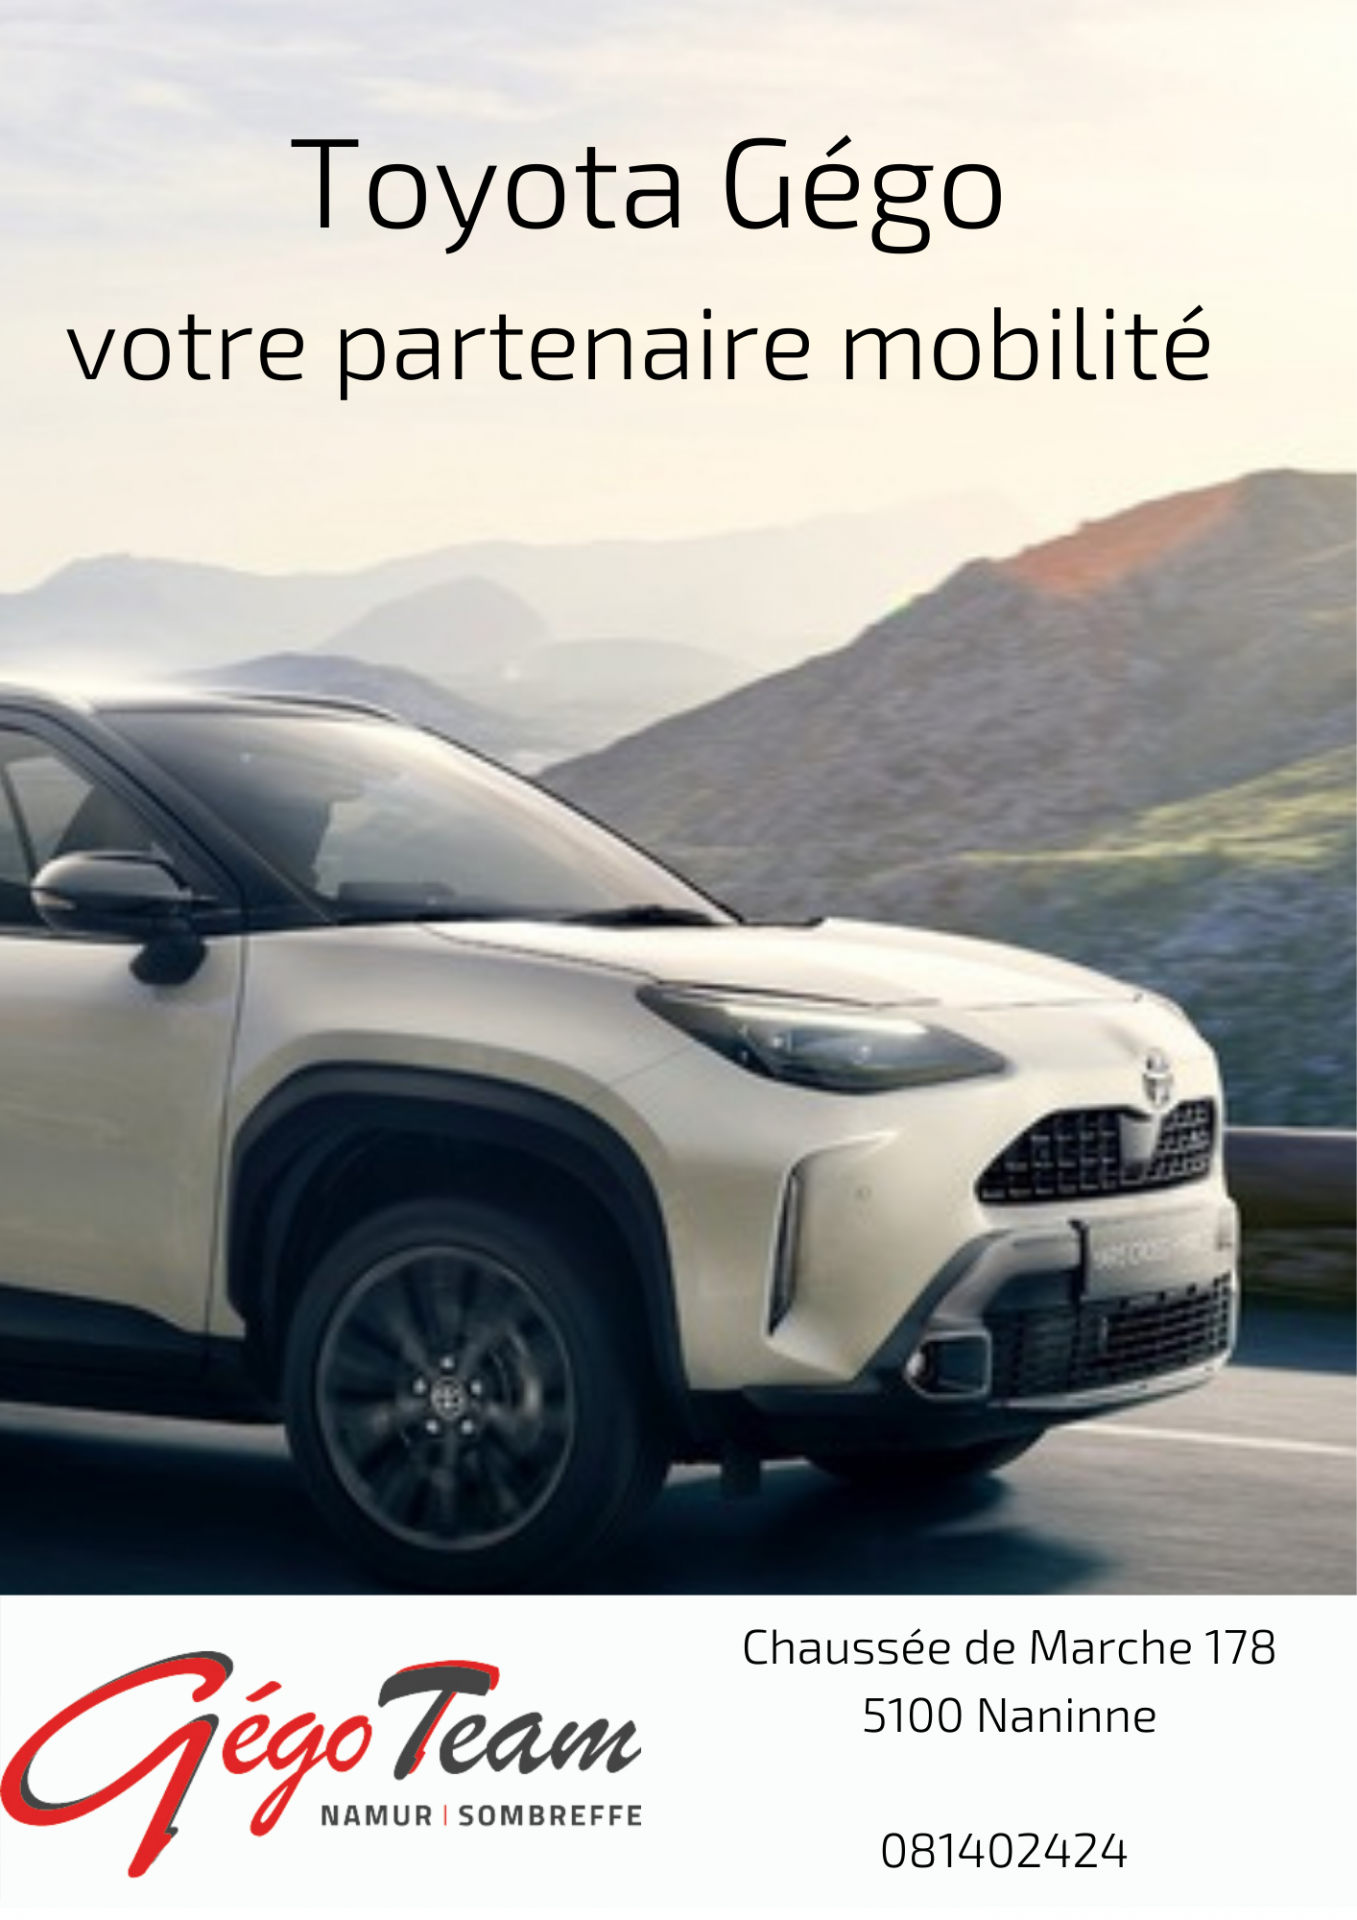 Toyota gego votre partenaire mobilite